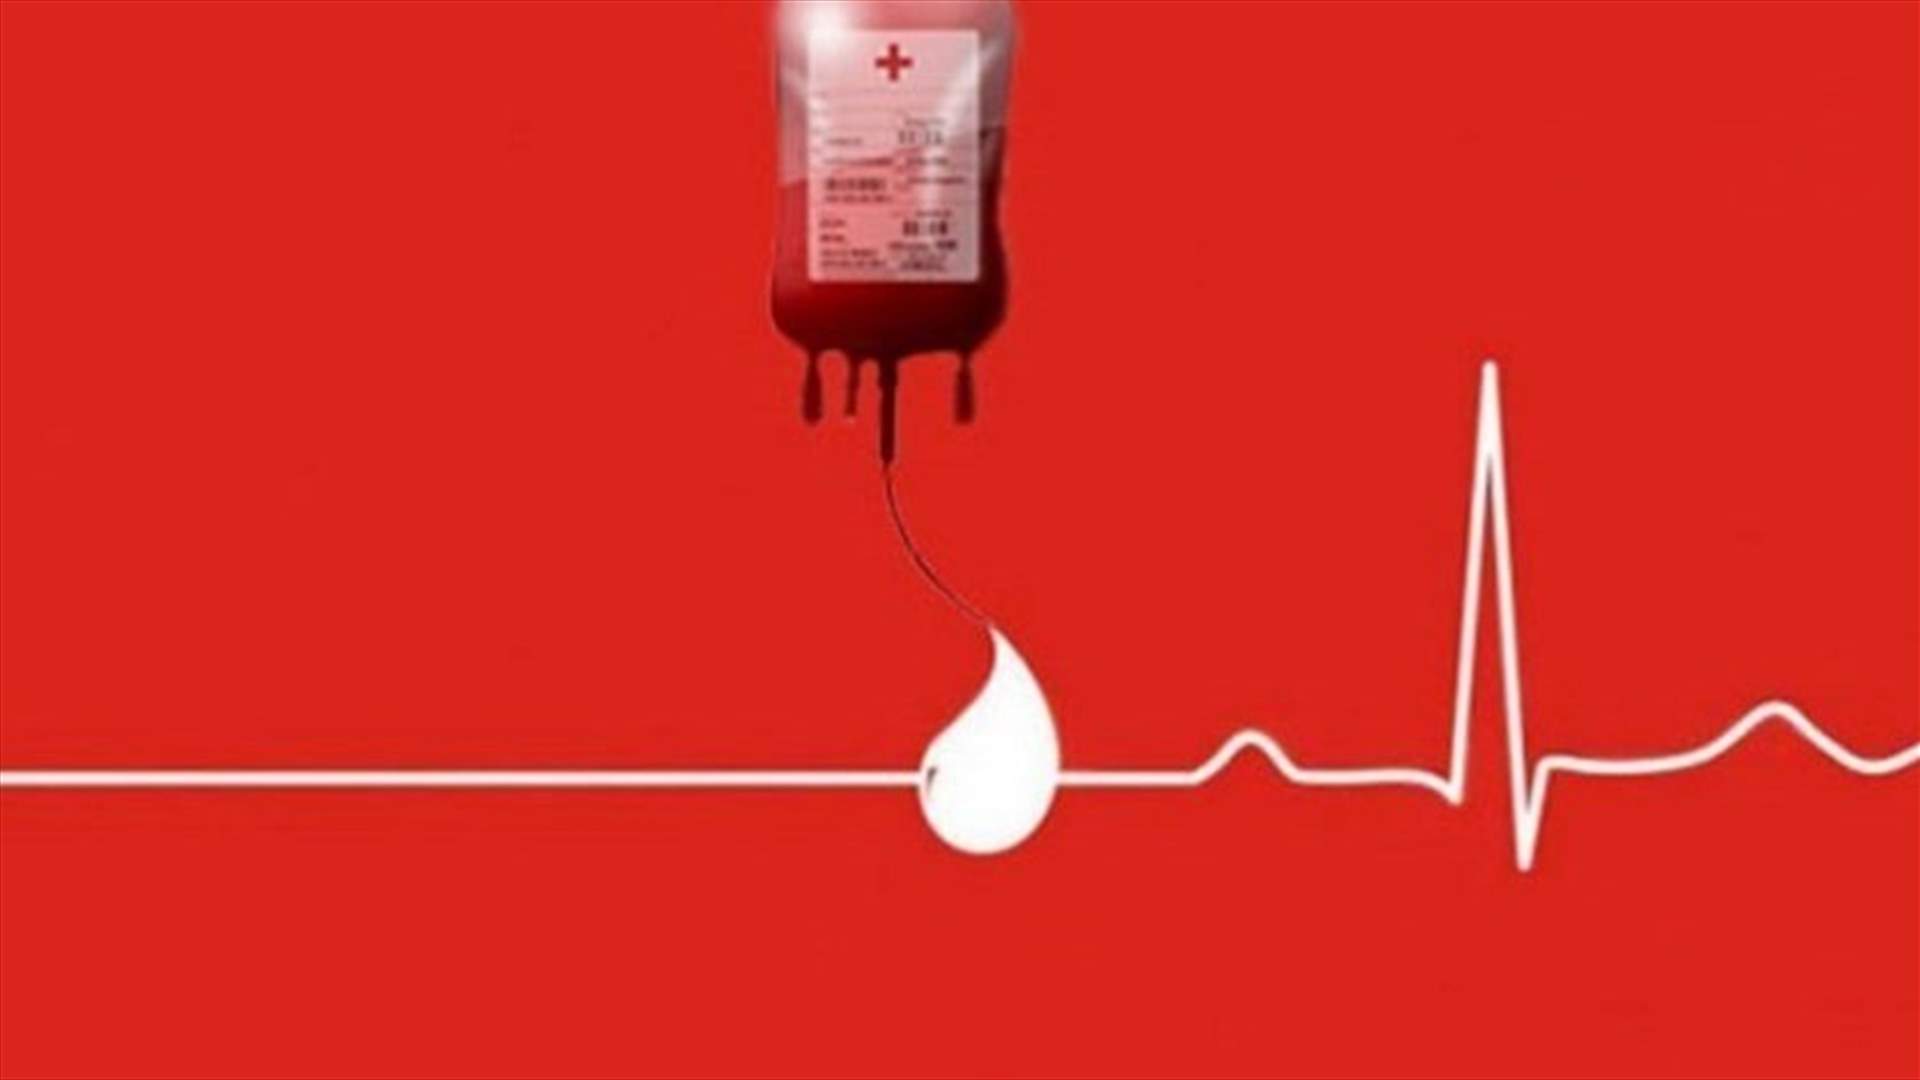 مريض في مستشفى المشرق بحاجة ماسة الى 8 وحدات دم وبلاكيت من فئة AB- للتبرع الاتصال على 03130513